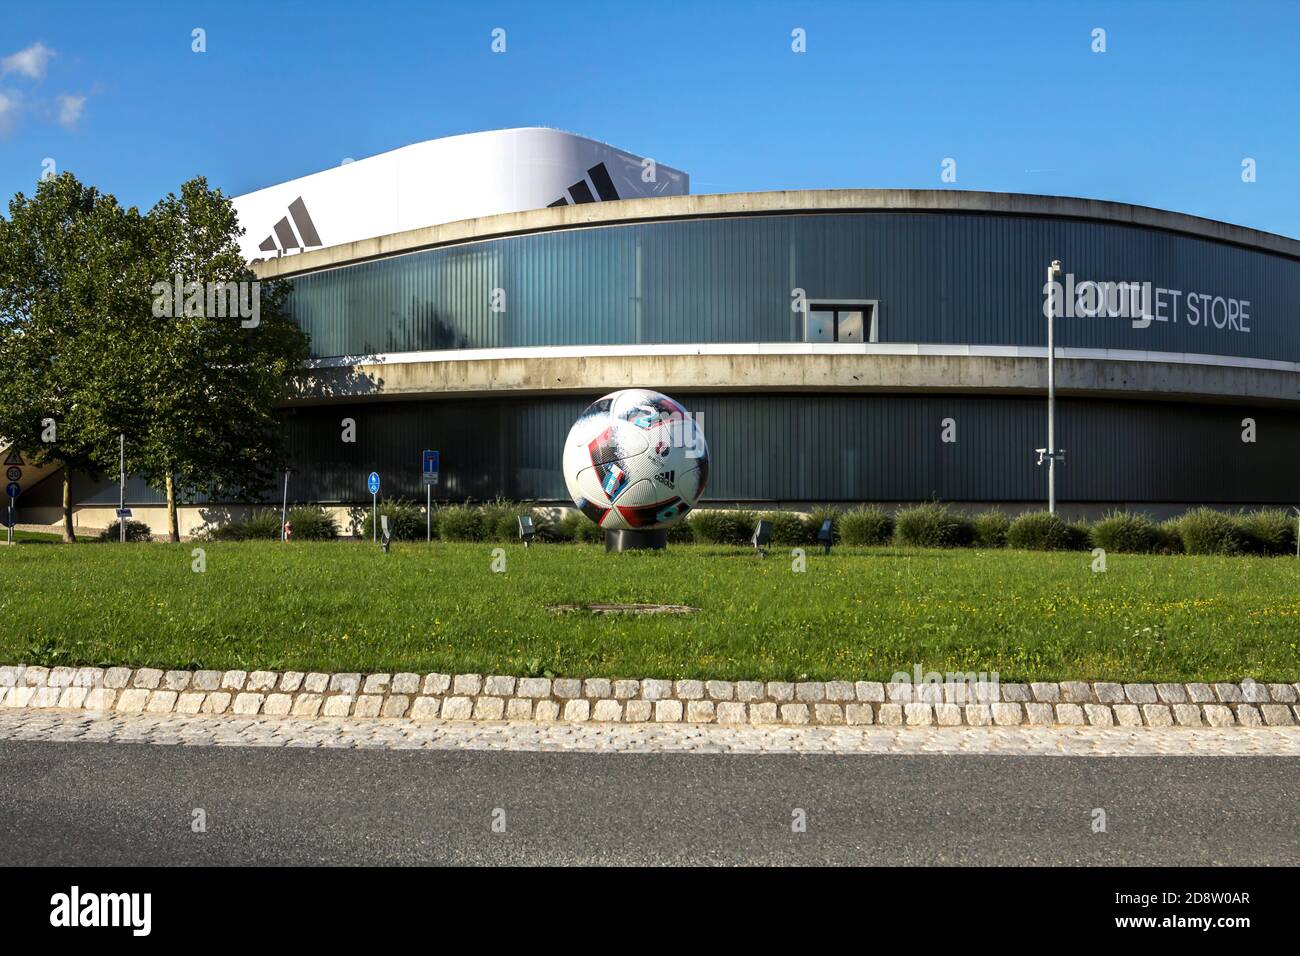 Herzogenaurach, Deutschland : Adidas Store. Adidas ist ein deutscher  multinationaler Konzern, der Sportbekleidung und AC entwirft und herstellt  Stockfotografie - Alamy